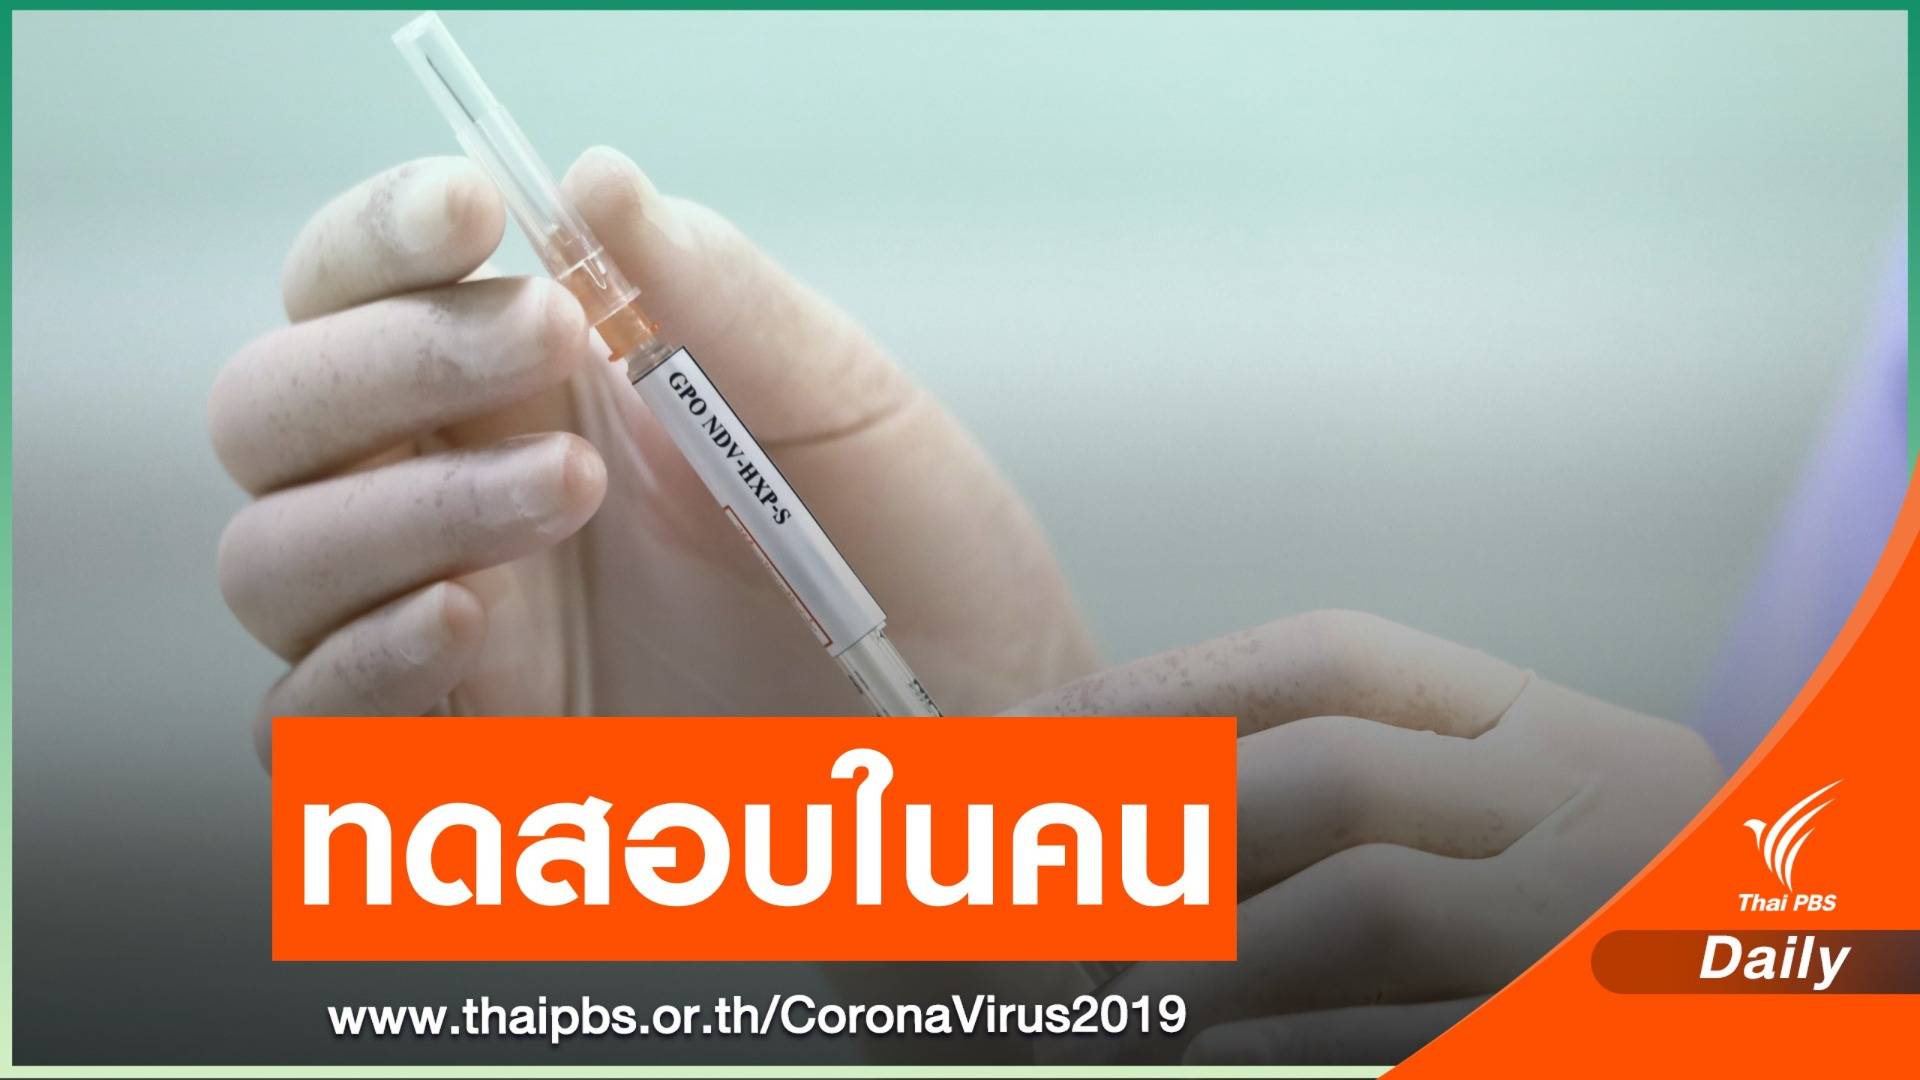 เริ่มแล้ว! อภ.ทดสอบวัคซีน COVID-19 ในคน ระยะ 1-2